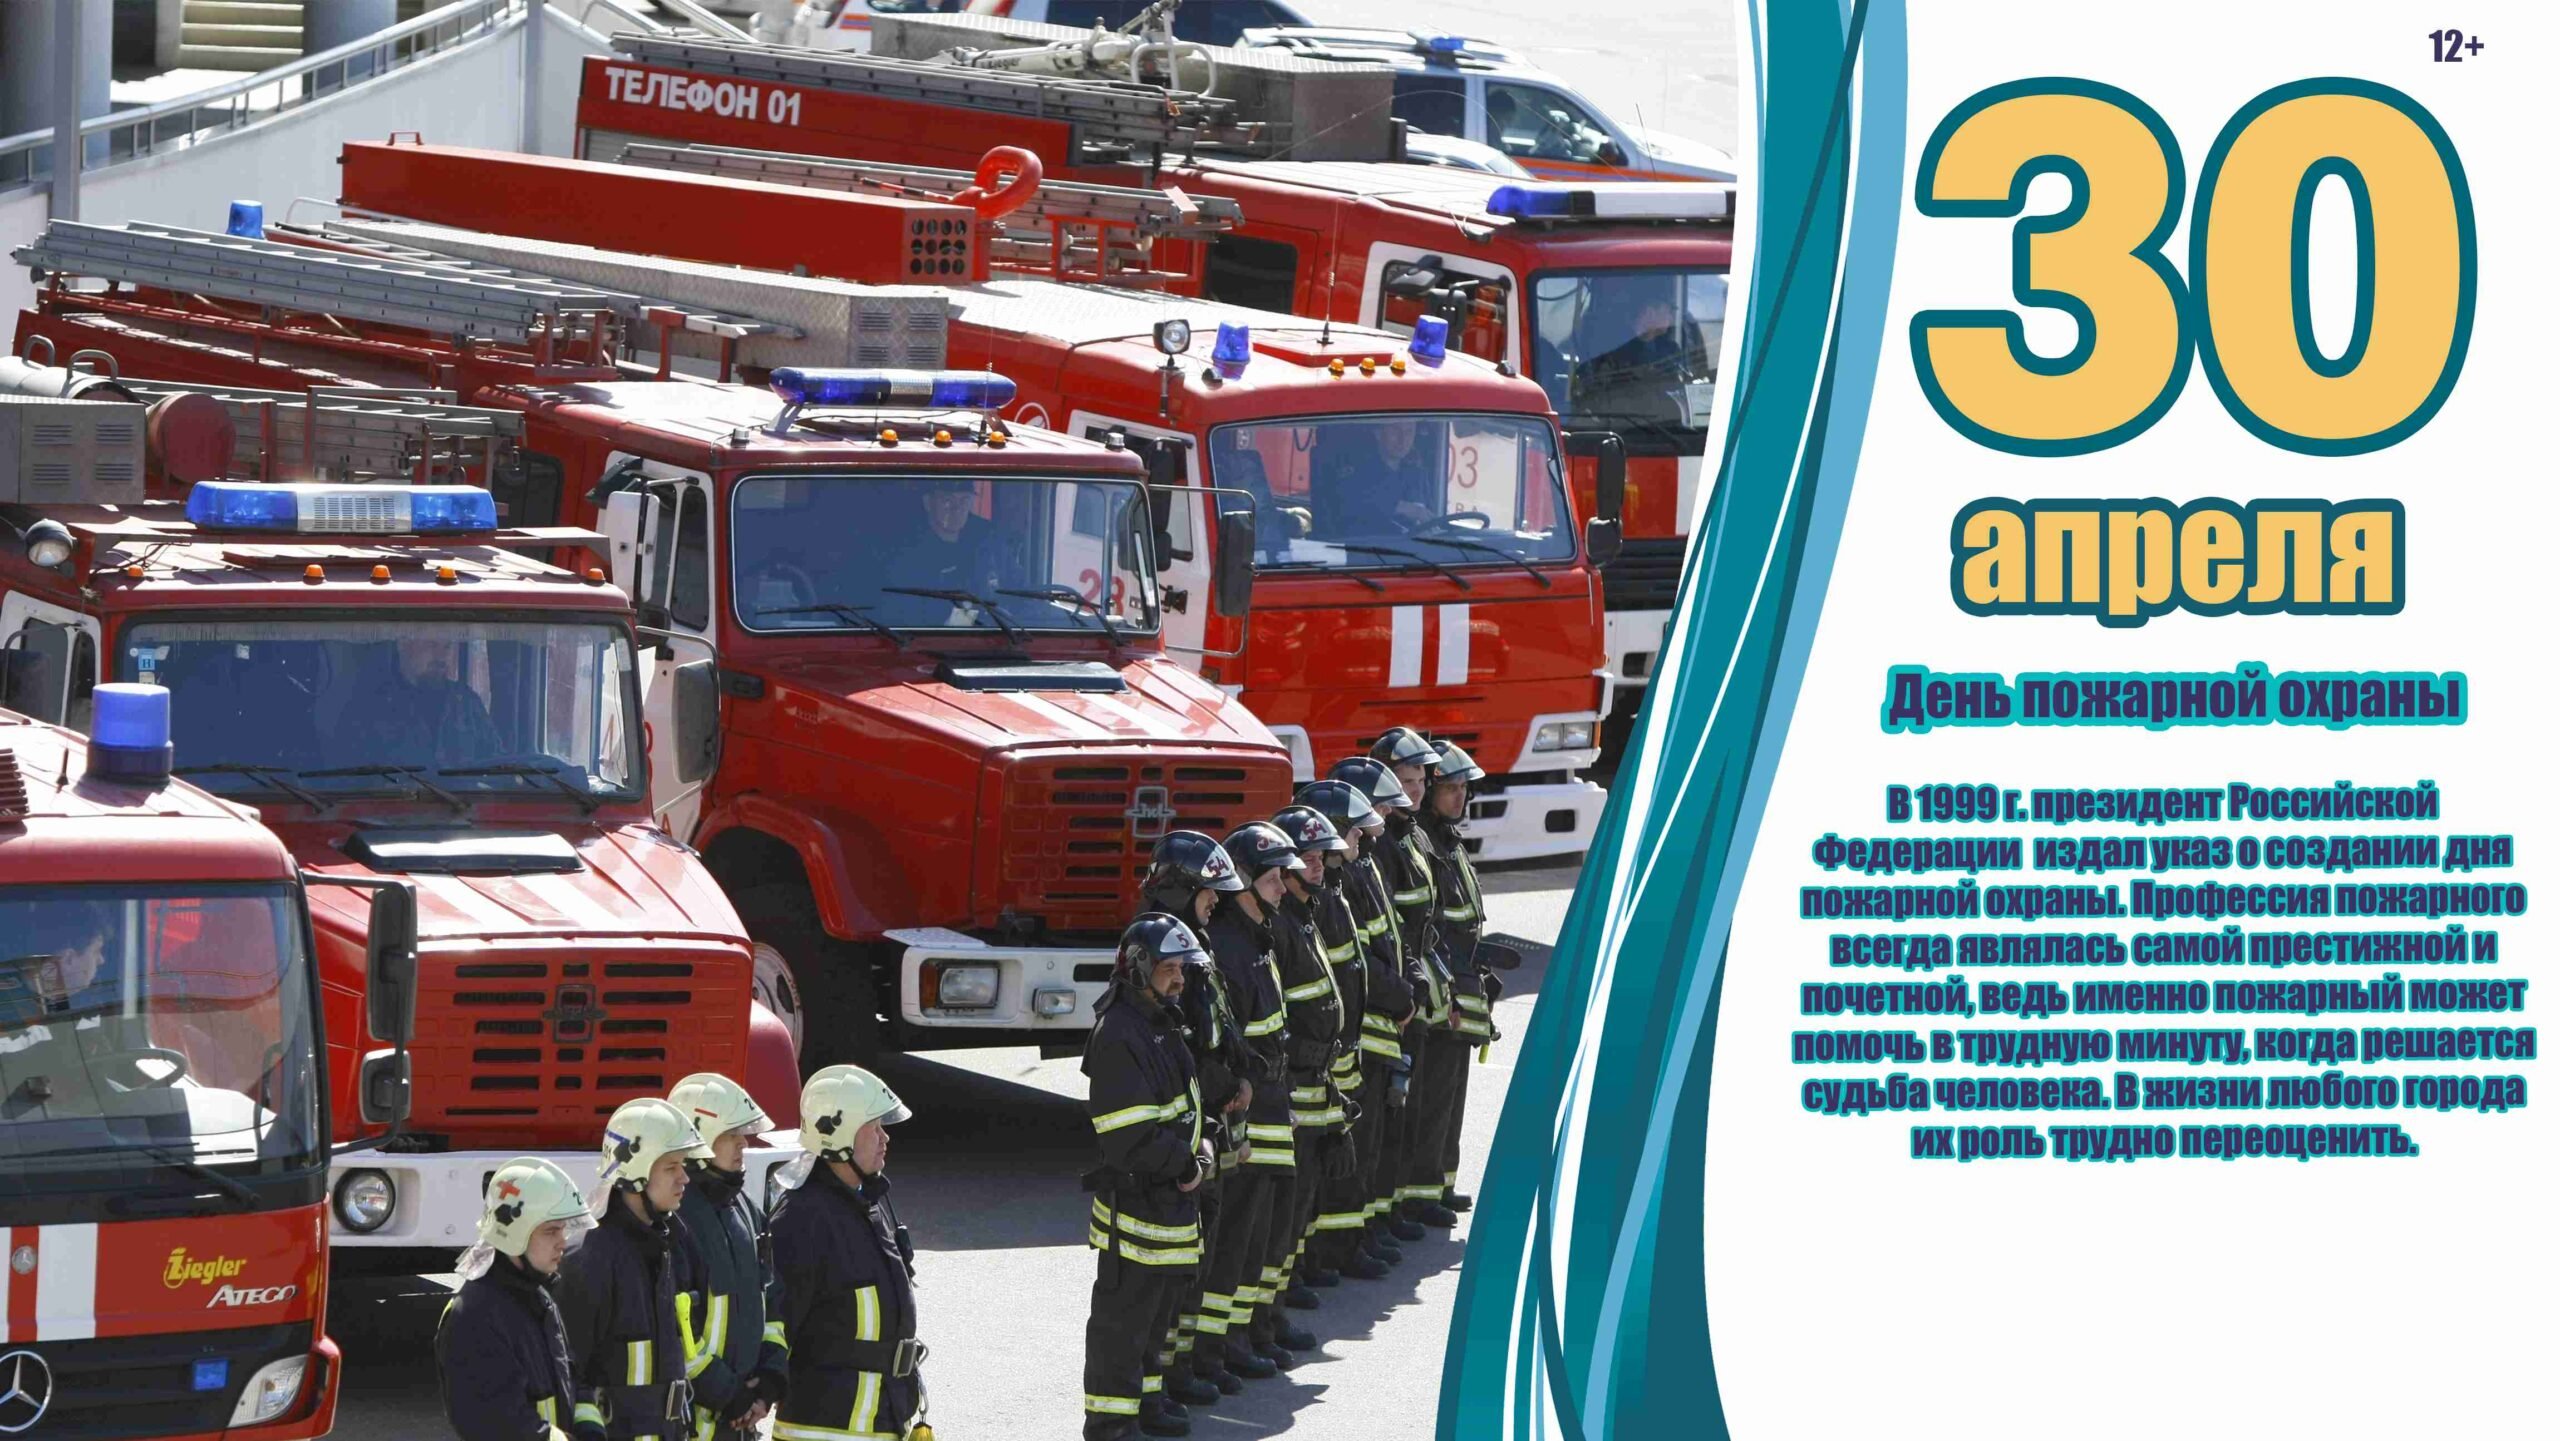 Какие праздники есть 30 апреля. День пожарной охраны РФ 30 апреля. 30 Апреля праздник пожарной охраны поздравления. С днем пожарной охраны Росси. С днеммпожарной охраны.